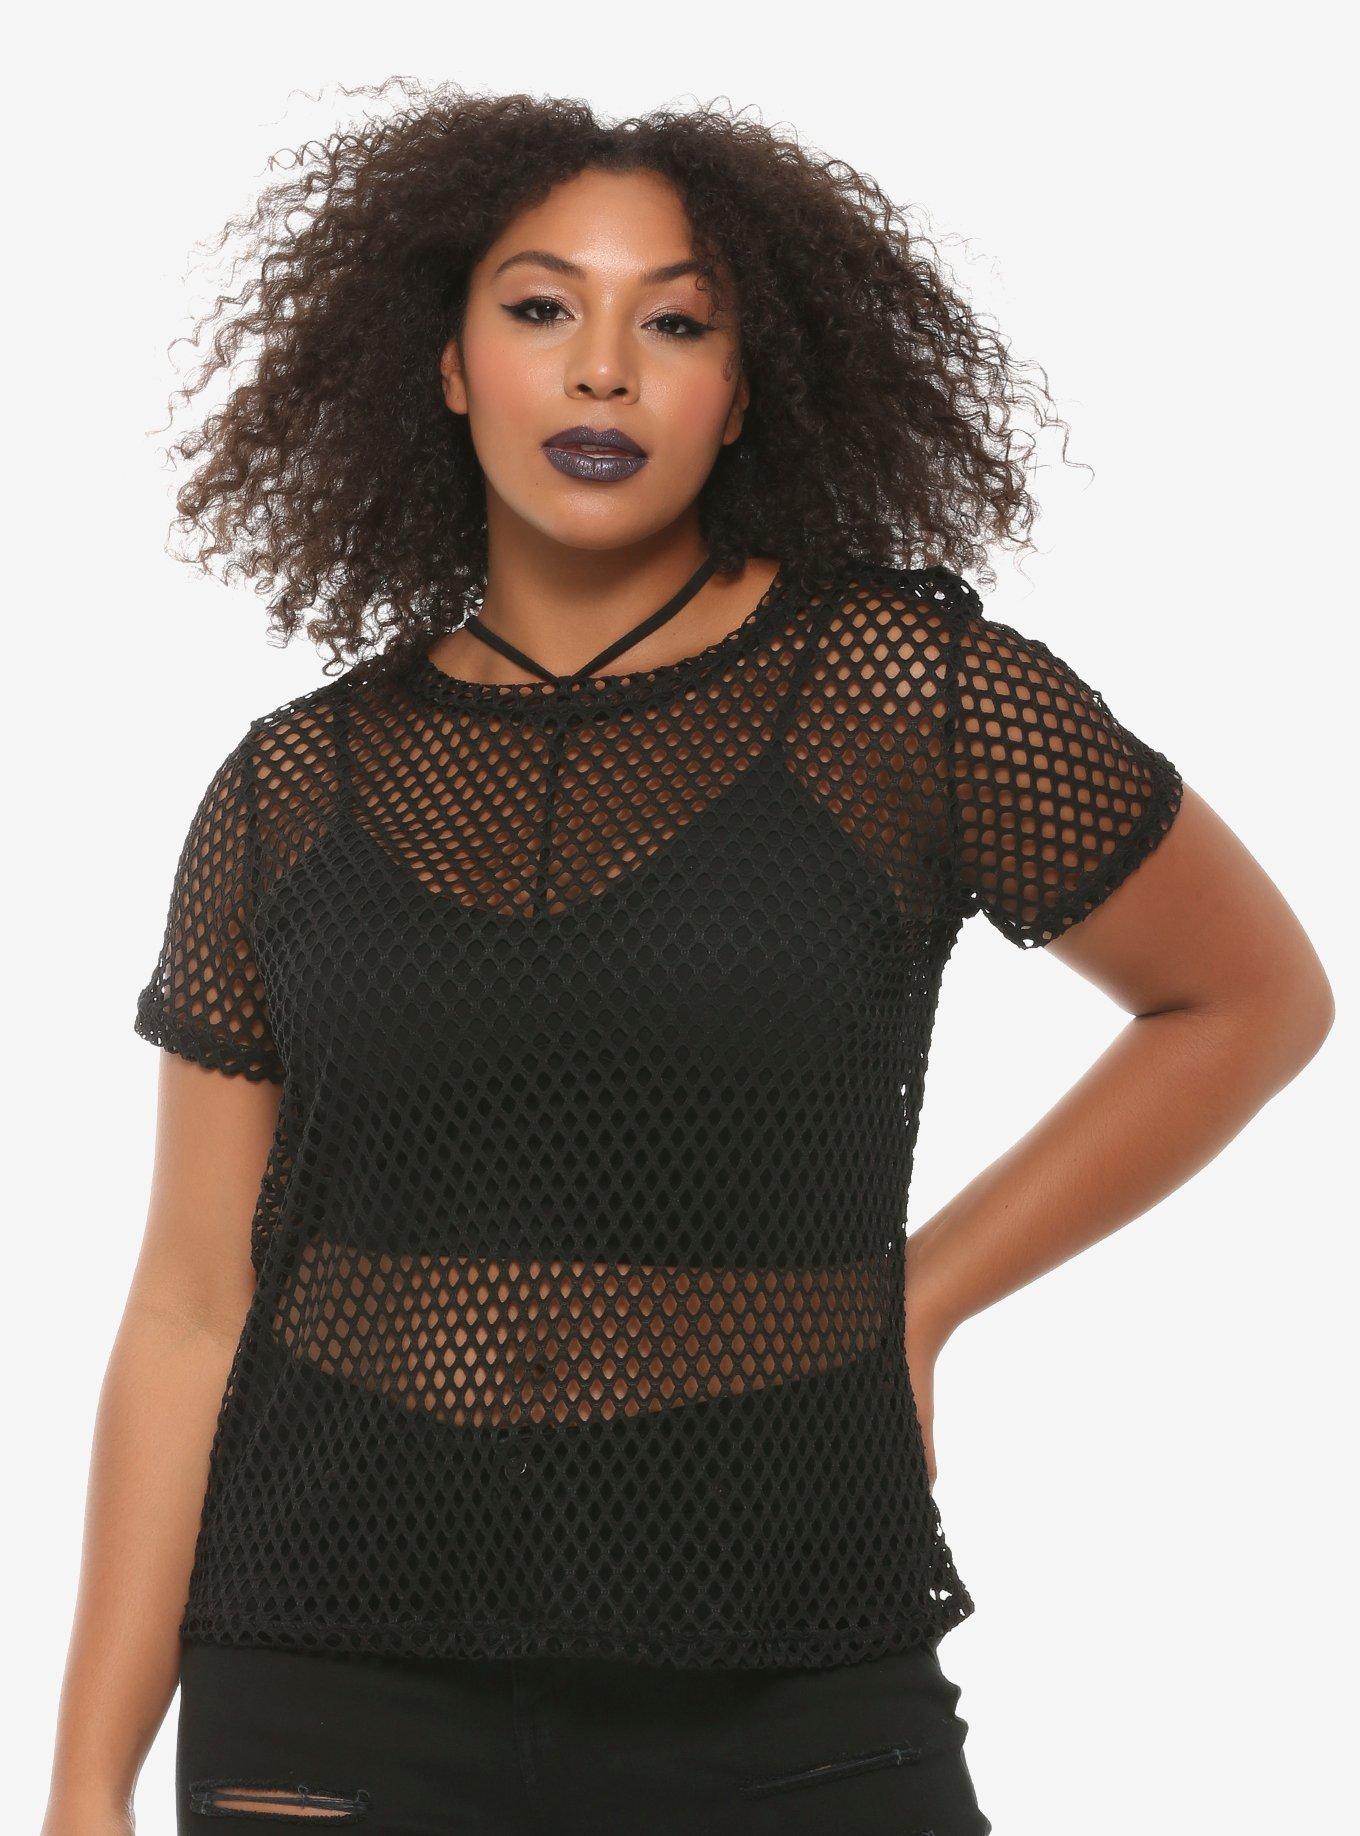 Black Fishnet Mesh Girls T-Shirt Plus Size | Hot Topic